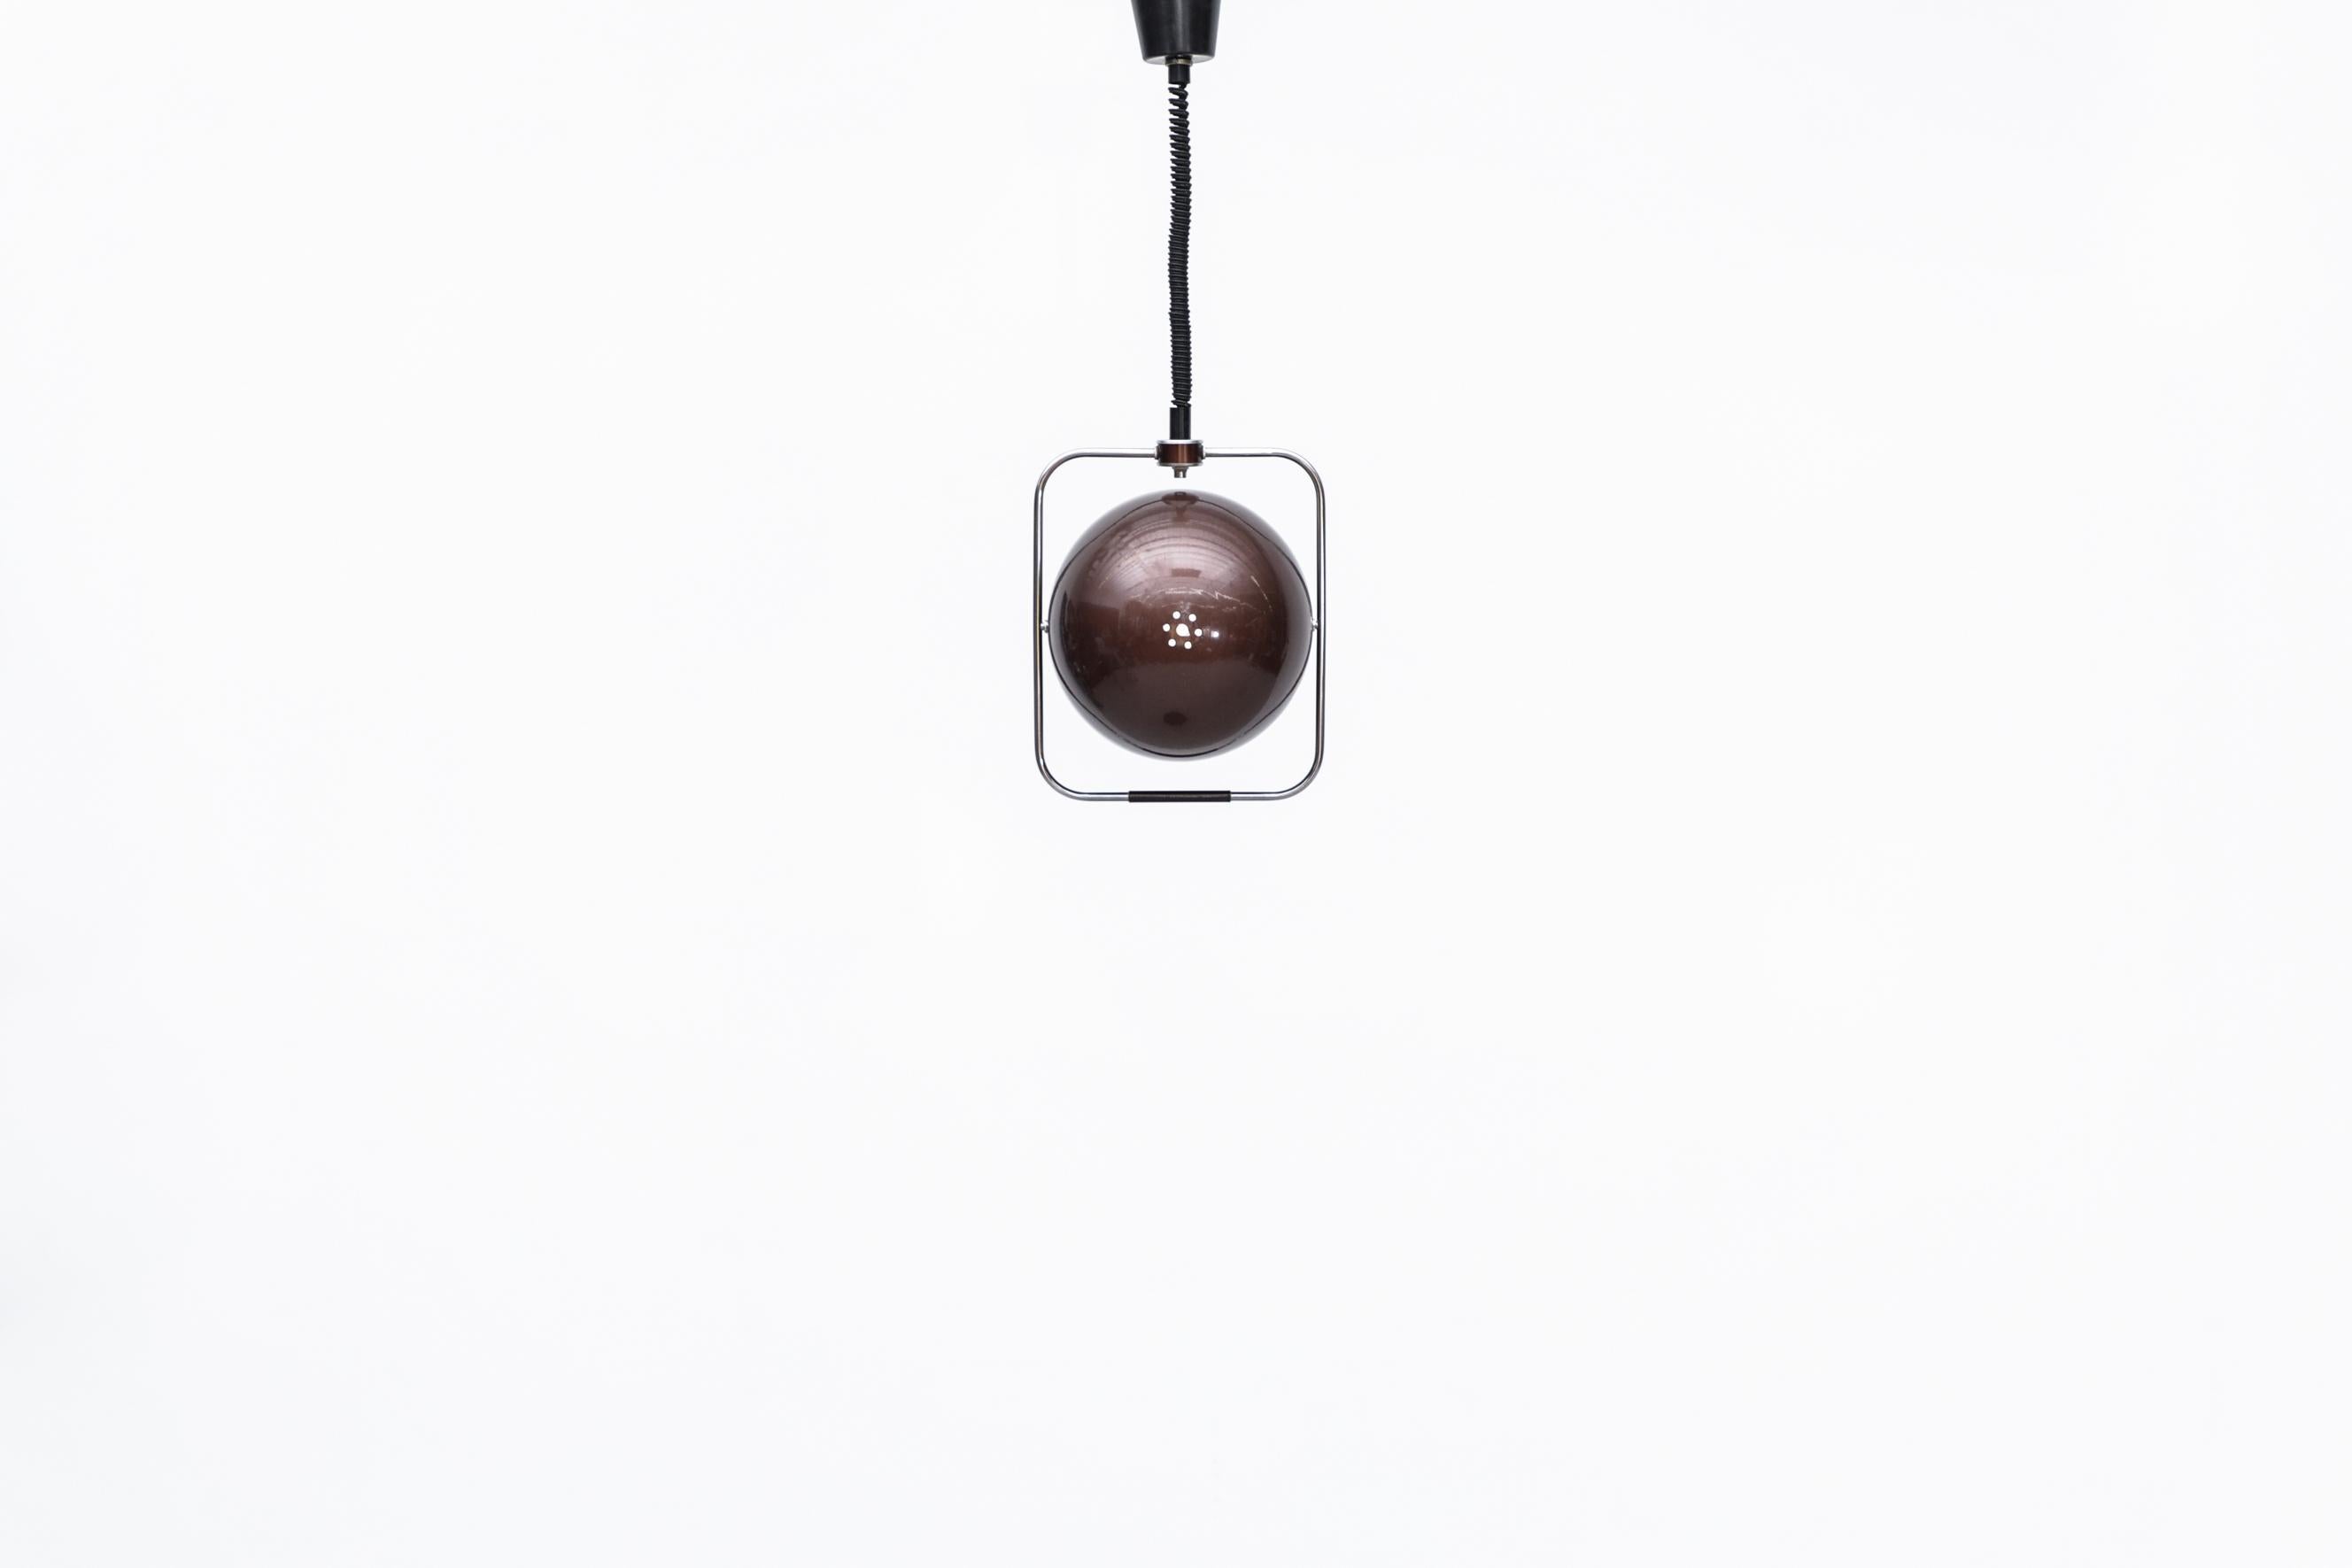 Lampe pendante Gepo du milieu du siècle avec un globe émaillé de couleur marron dans une structure carrée en chrome. La verrière abrite une poulie permettant au fil ressemblant à un cordon téléphonique de s'étendre et de se rétracter selon les